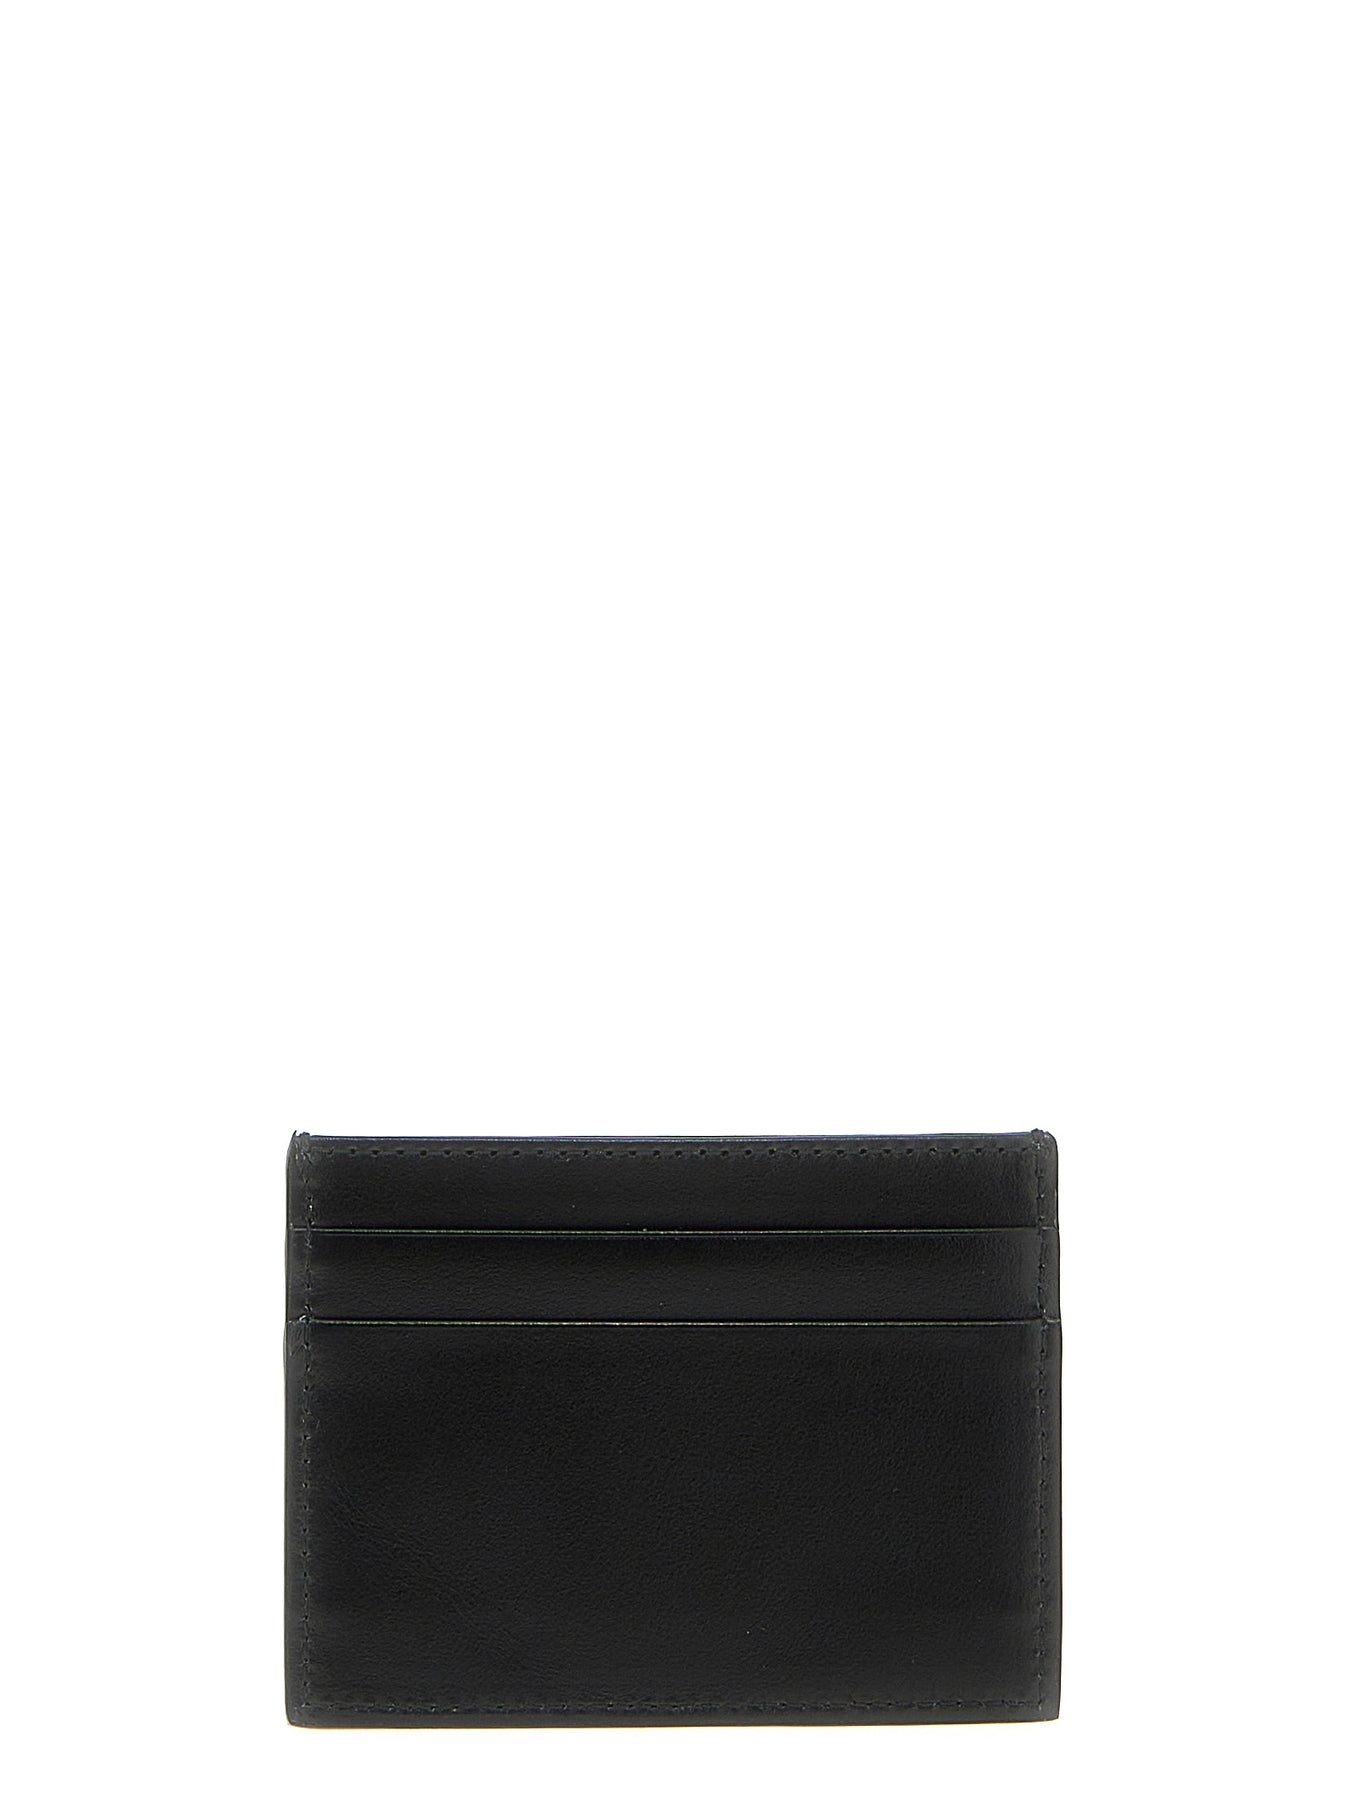 Logo Print Card Holder Wallets, Card Holders Black - 2